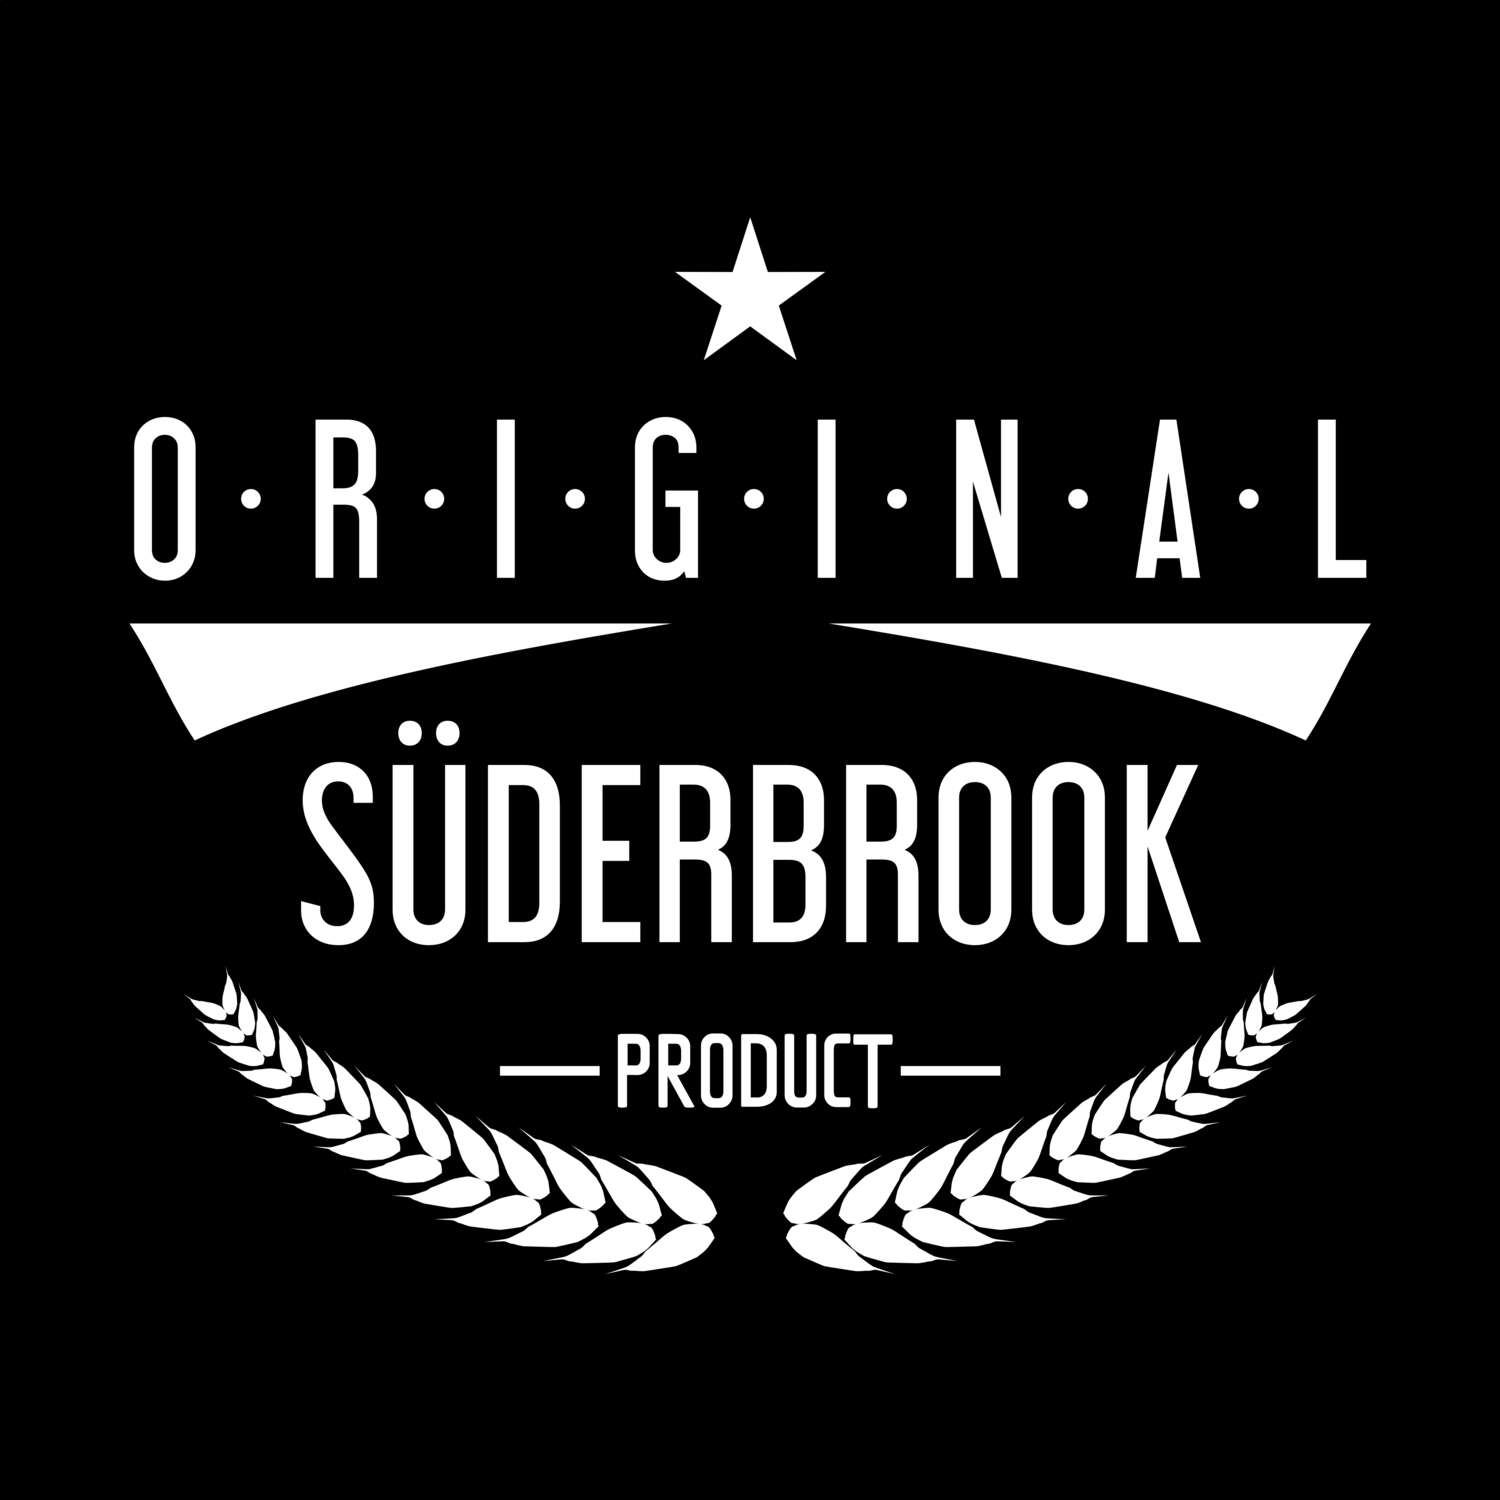 Süderbrook T-Shirt »Original Product«